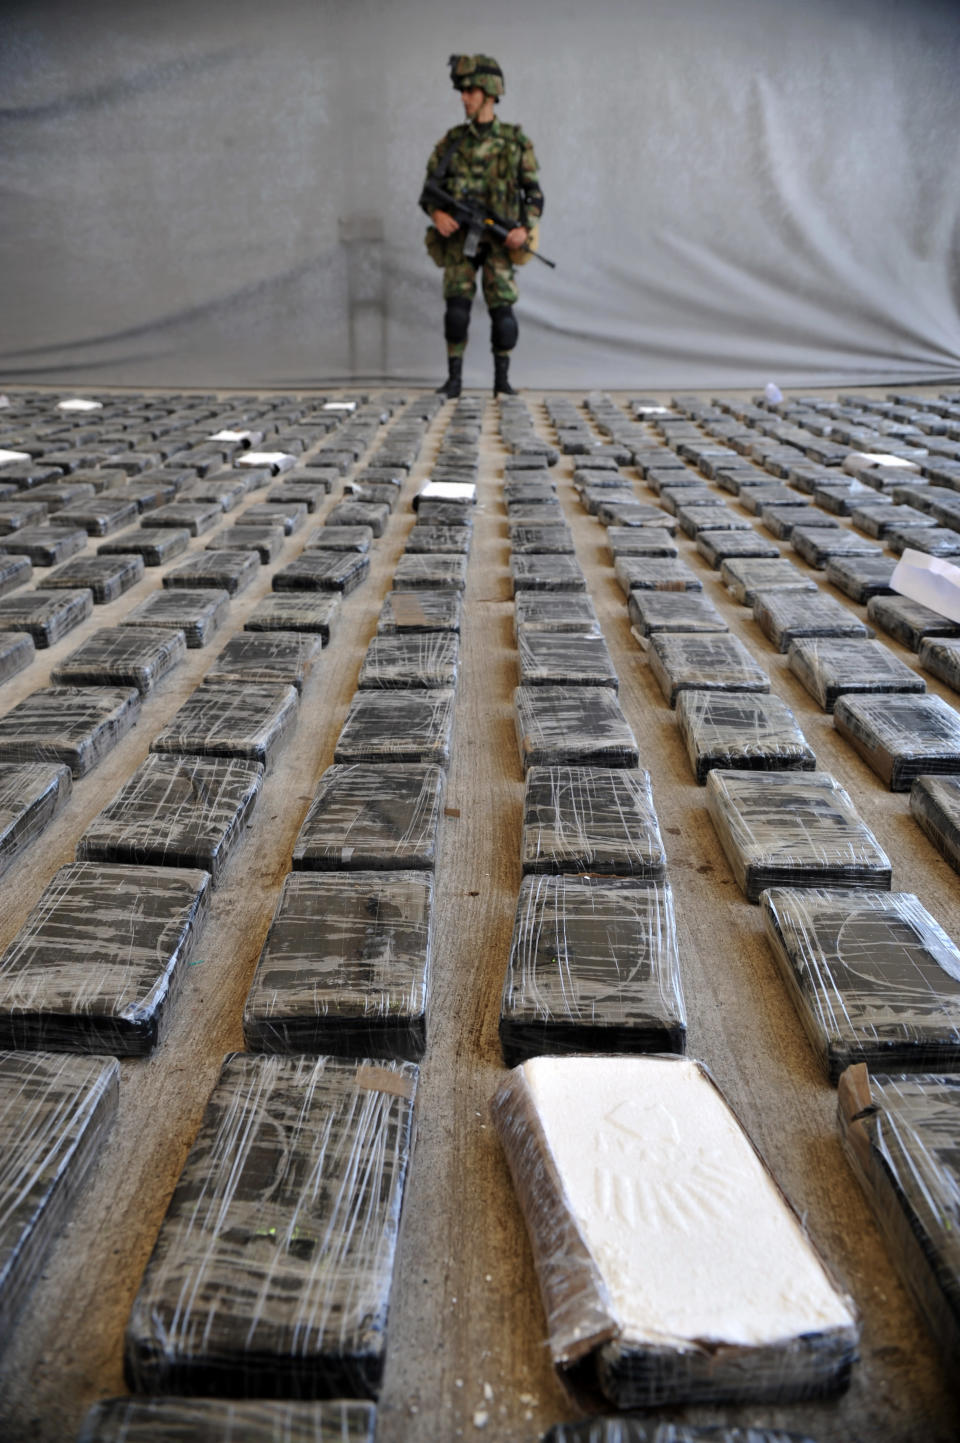 COLOMBIE, Tumaco. Un soldat surveille une cargaison de 3,9 tonnes de cocaïne saisie dans un grand laboratoire clandestin lors de sa présentation à la presse, le 16 mars 2013. AFP/Guillermo Legaria